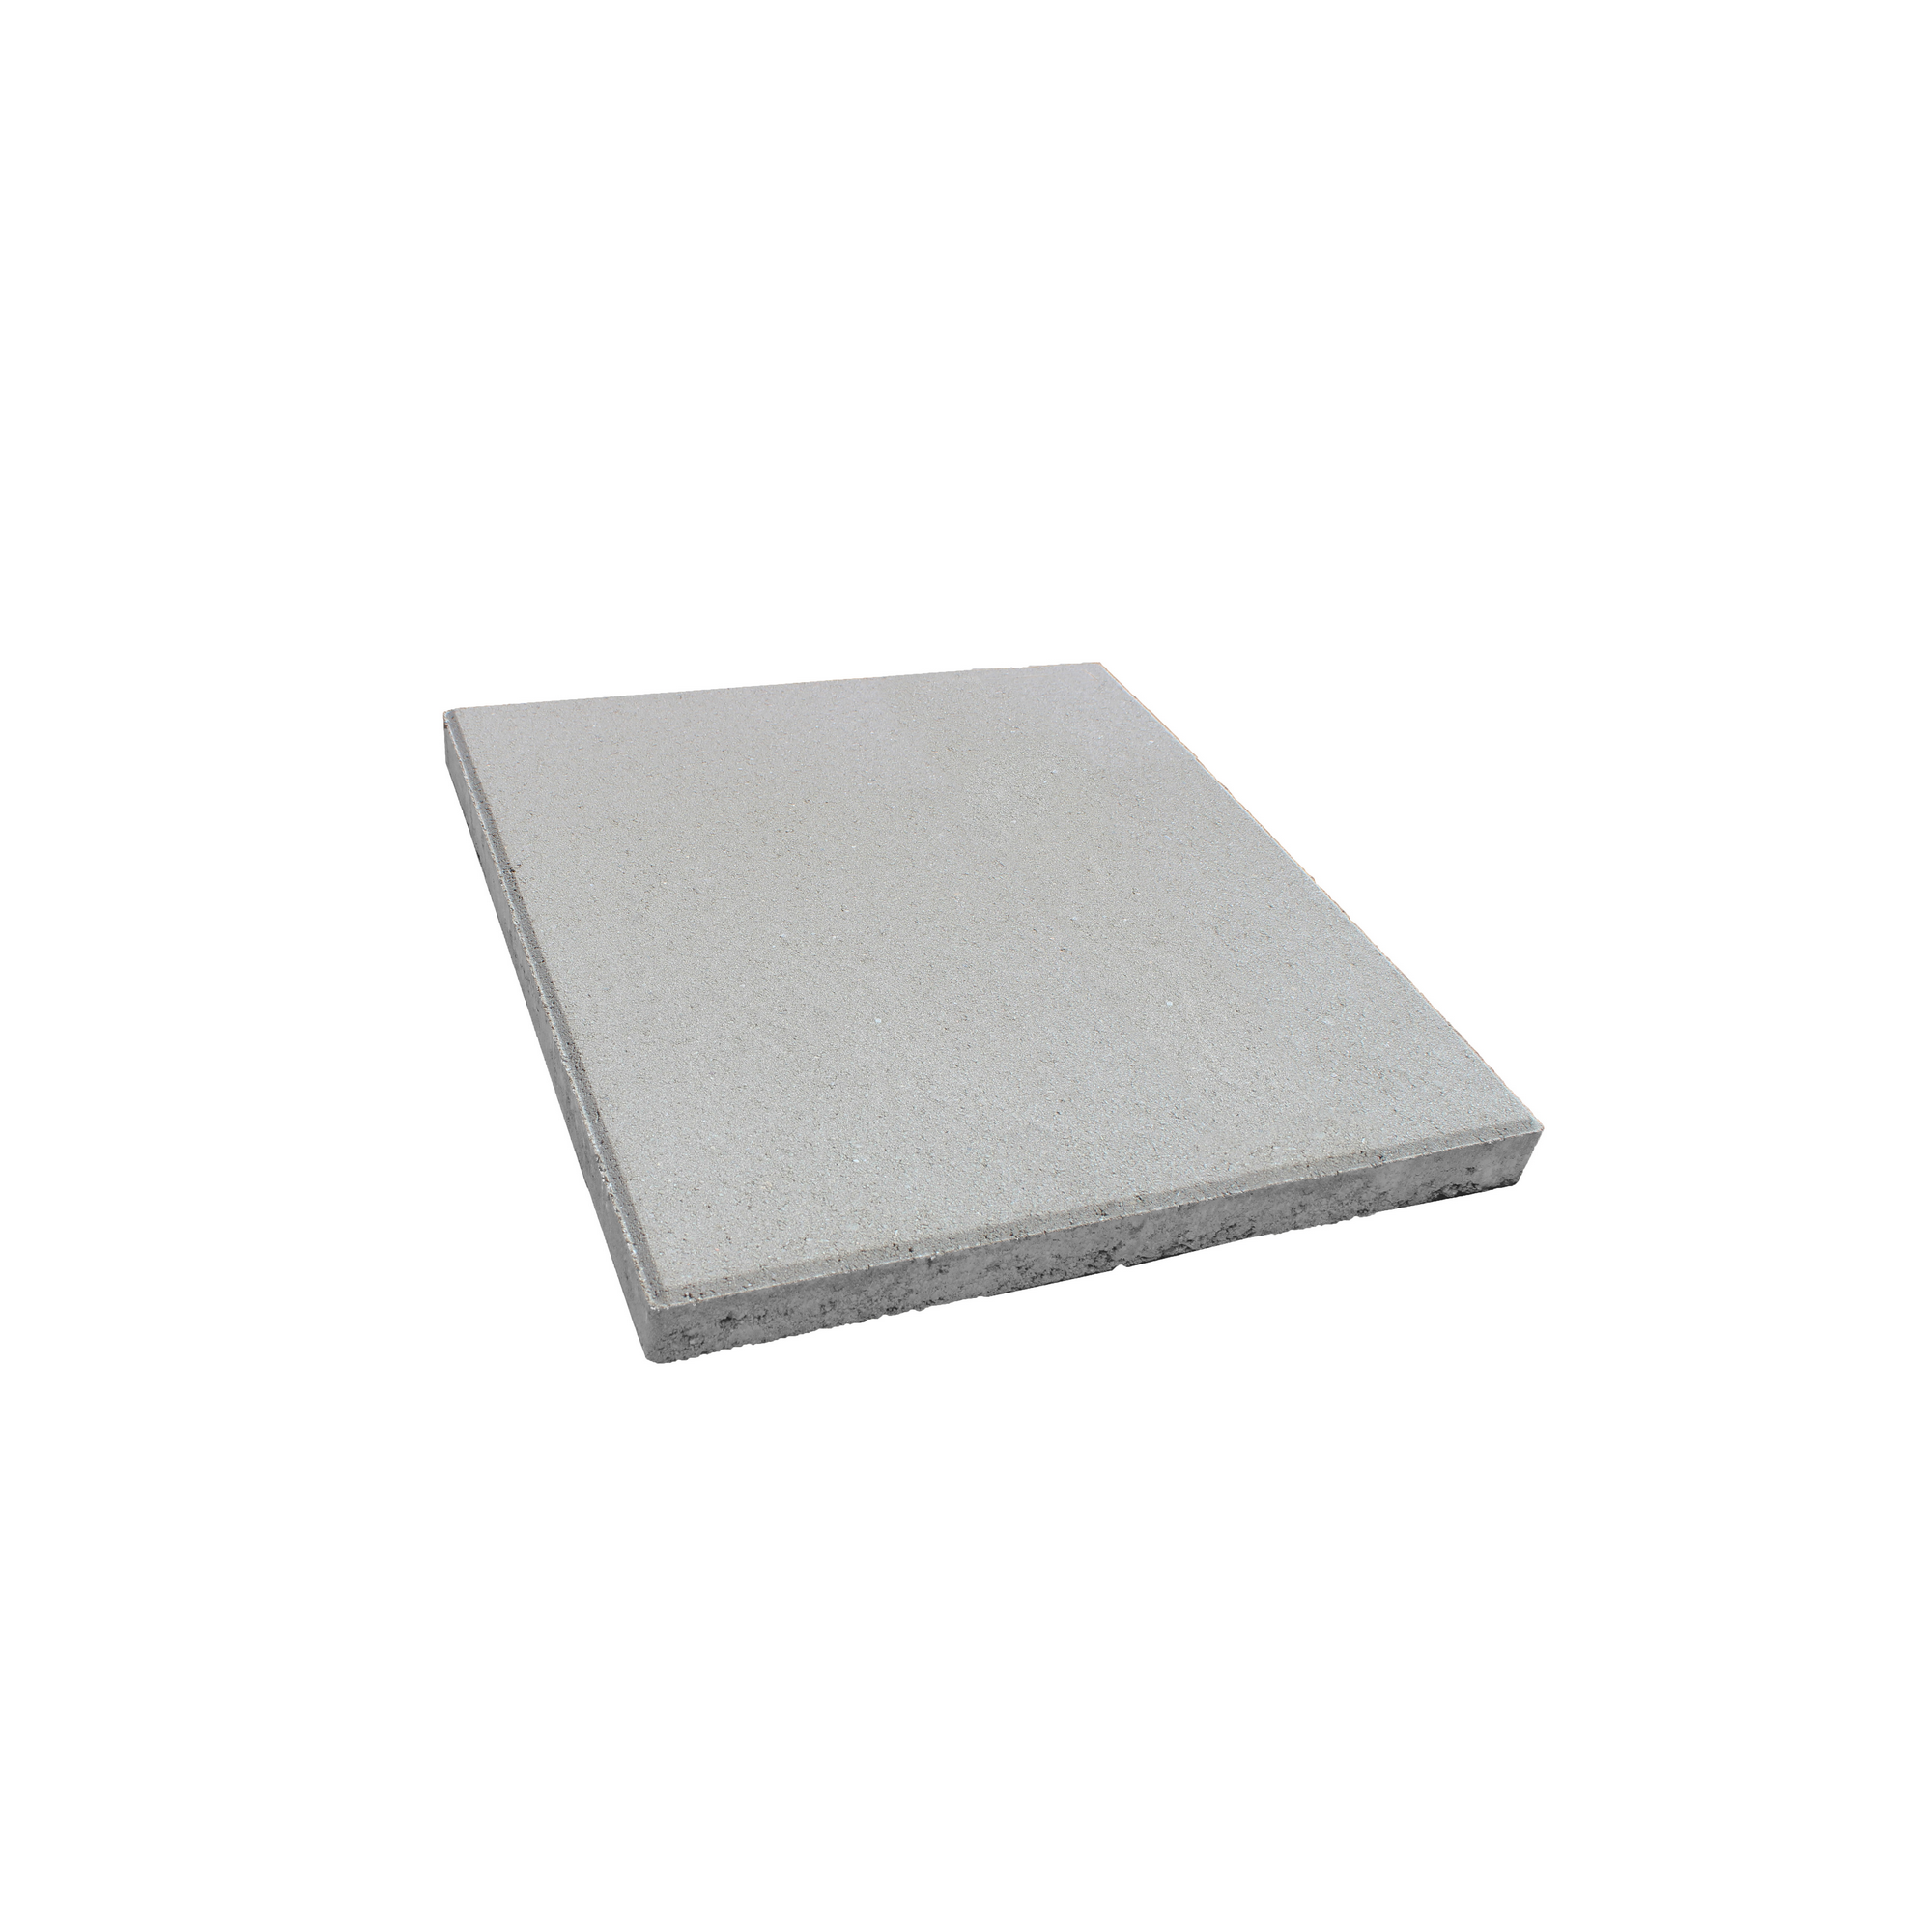 Betonplatte grau 30 x 30 x 4 cm + product picture